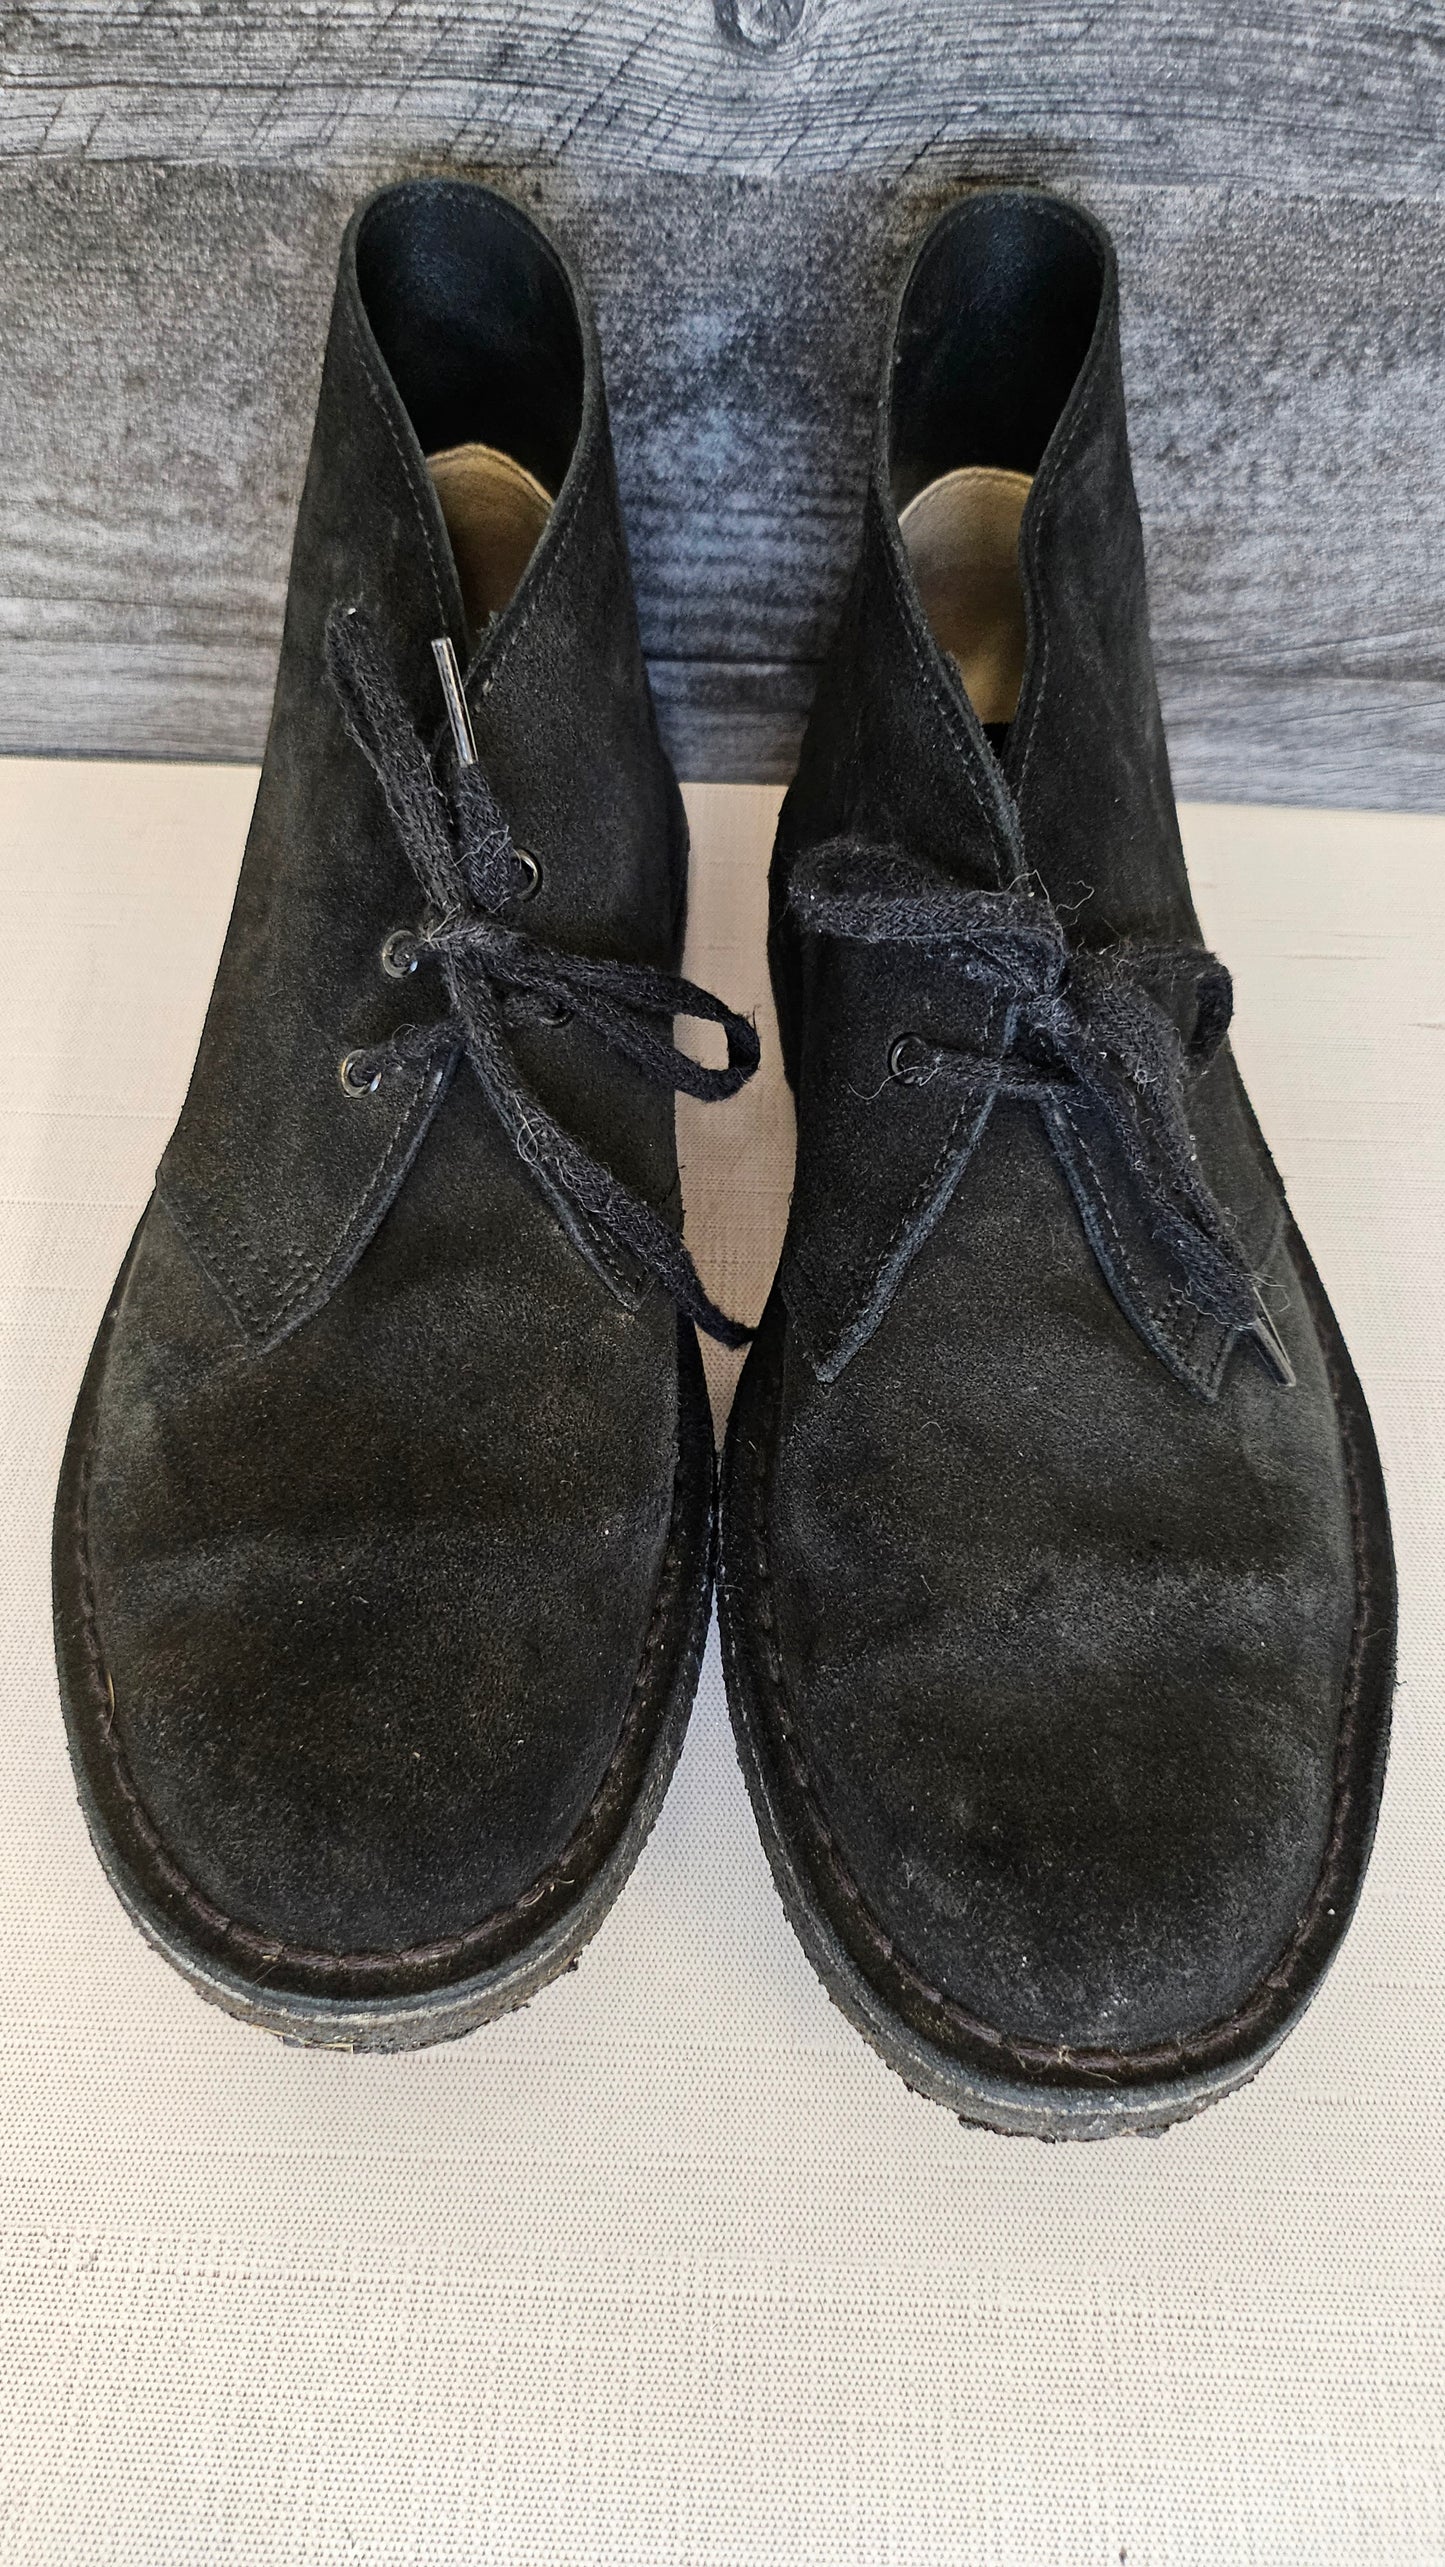 Clarks Black Desert Boots (41.5)